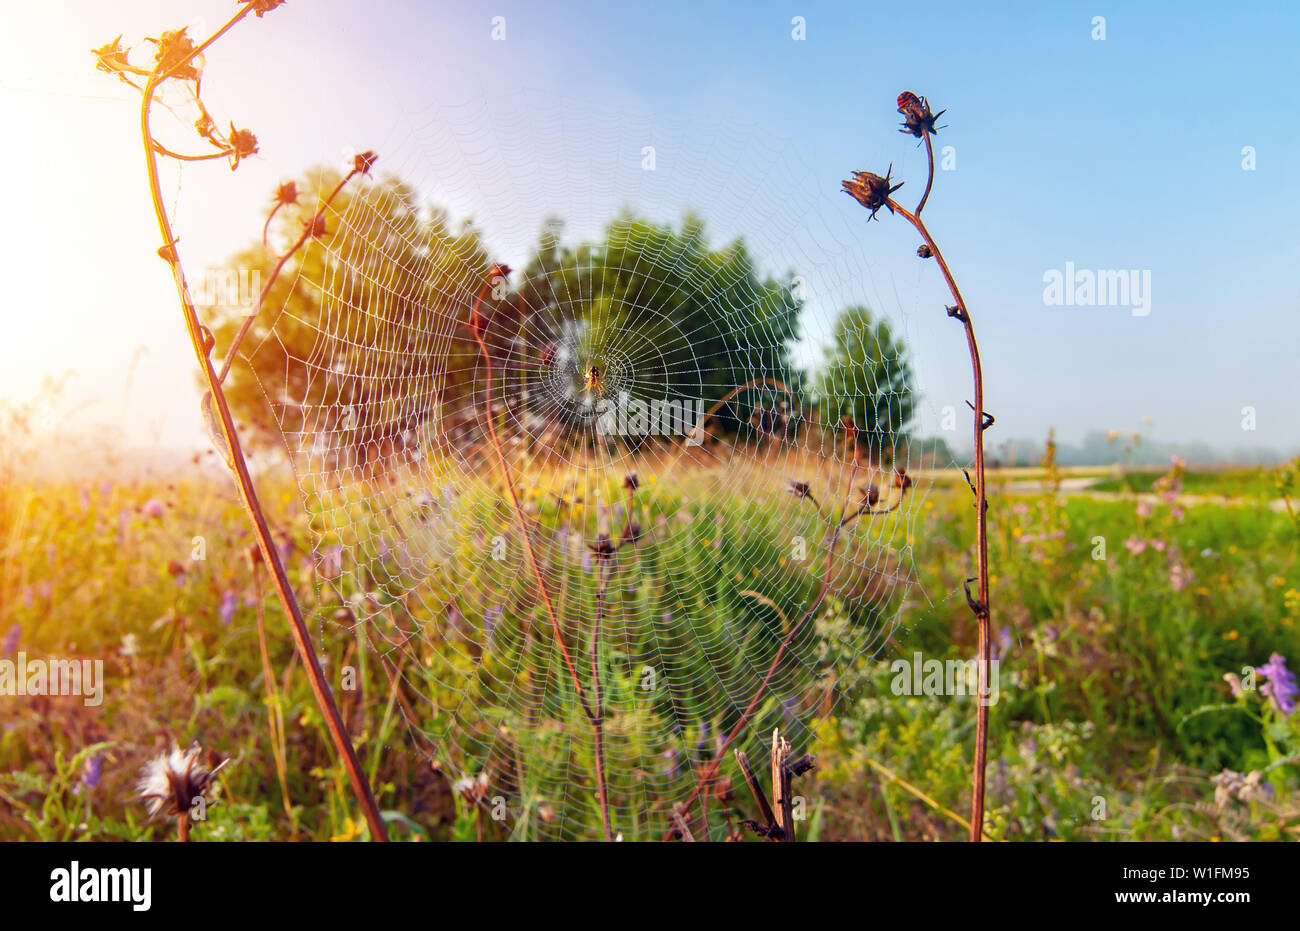 Spinne auf einem Spinnennetz in der Wiese am frühen Morgen - Weitwinkel Stockfoto